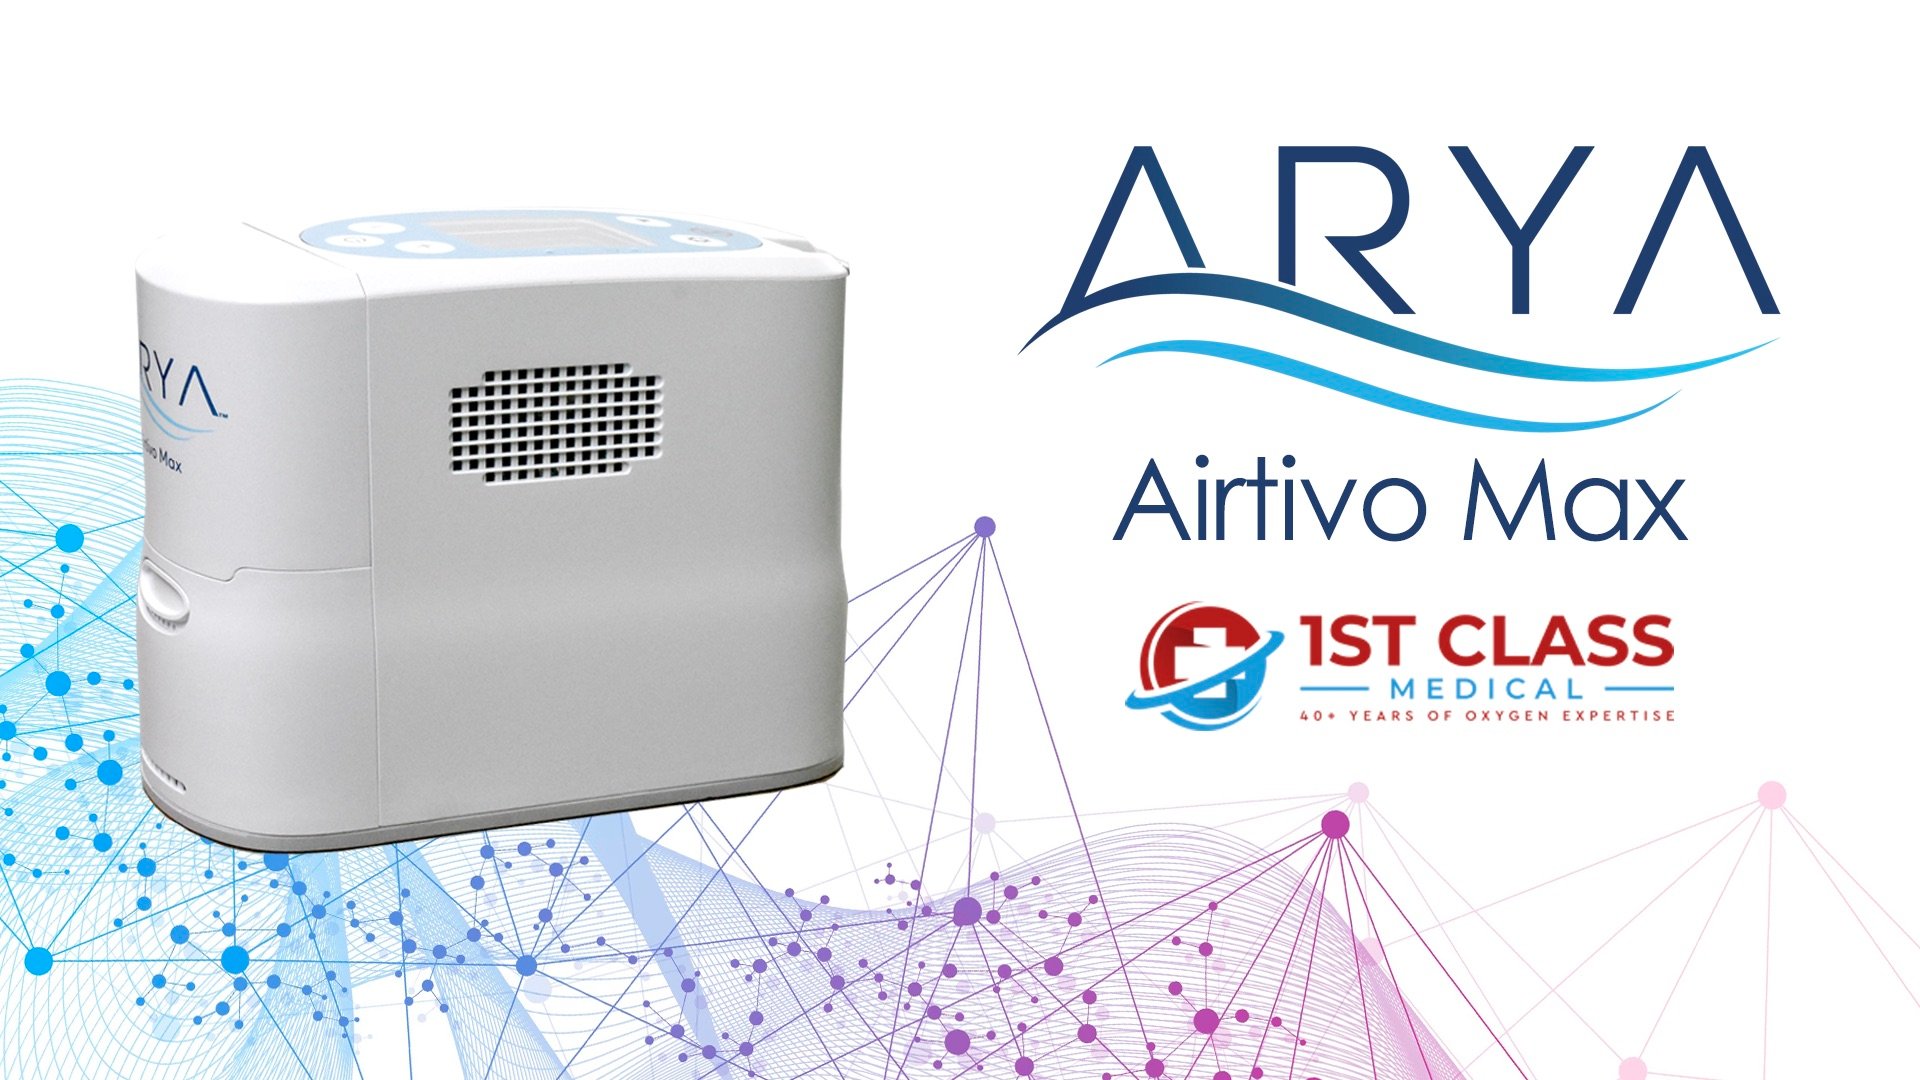 Arya Airtivo Max Portable Oxygen Concentrator